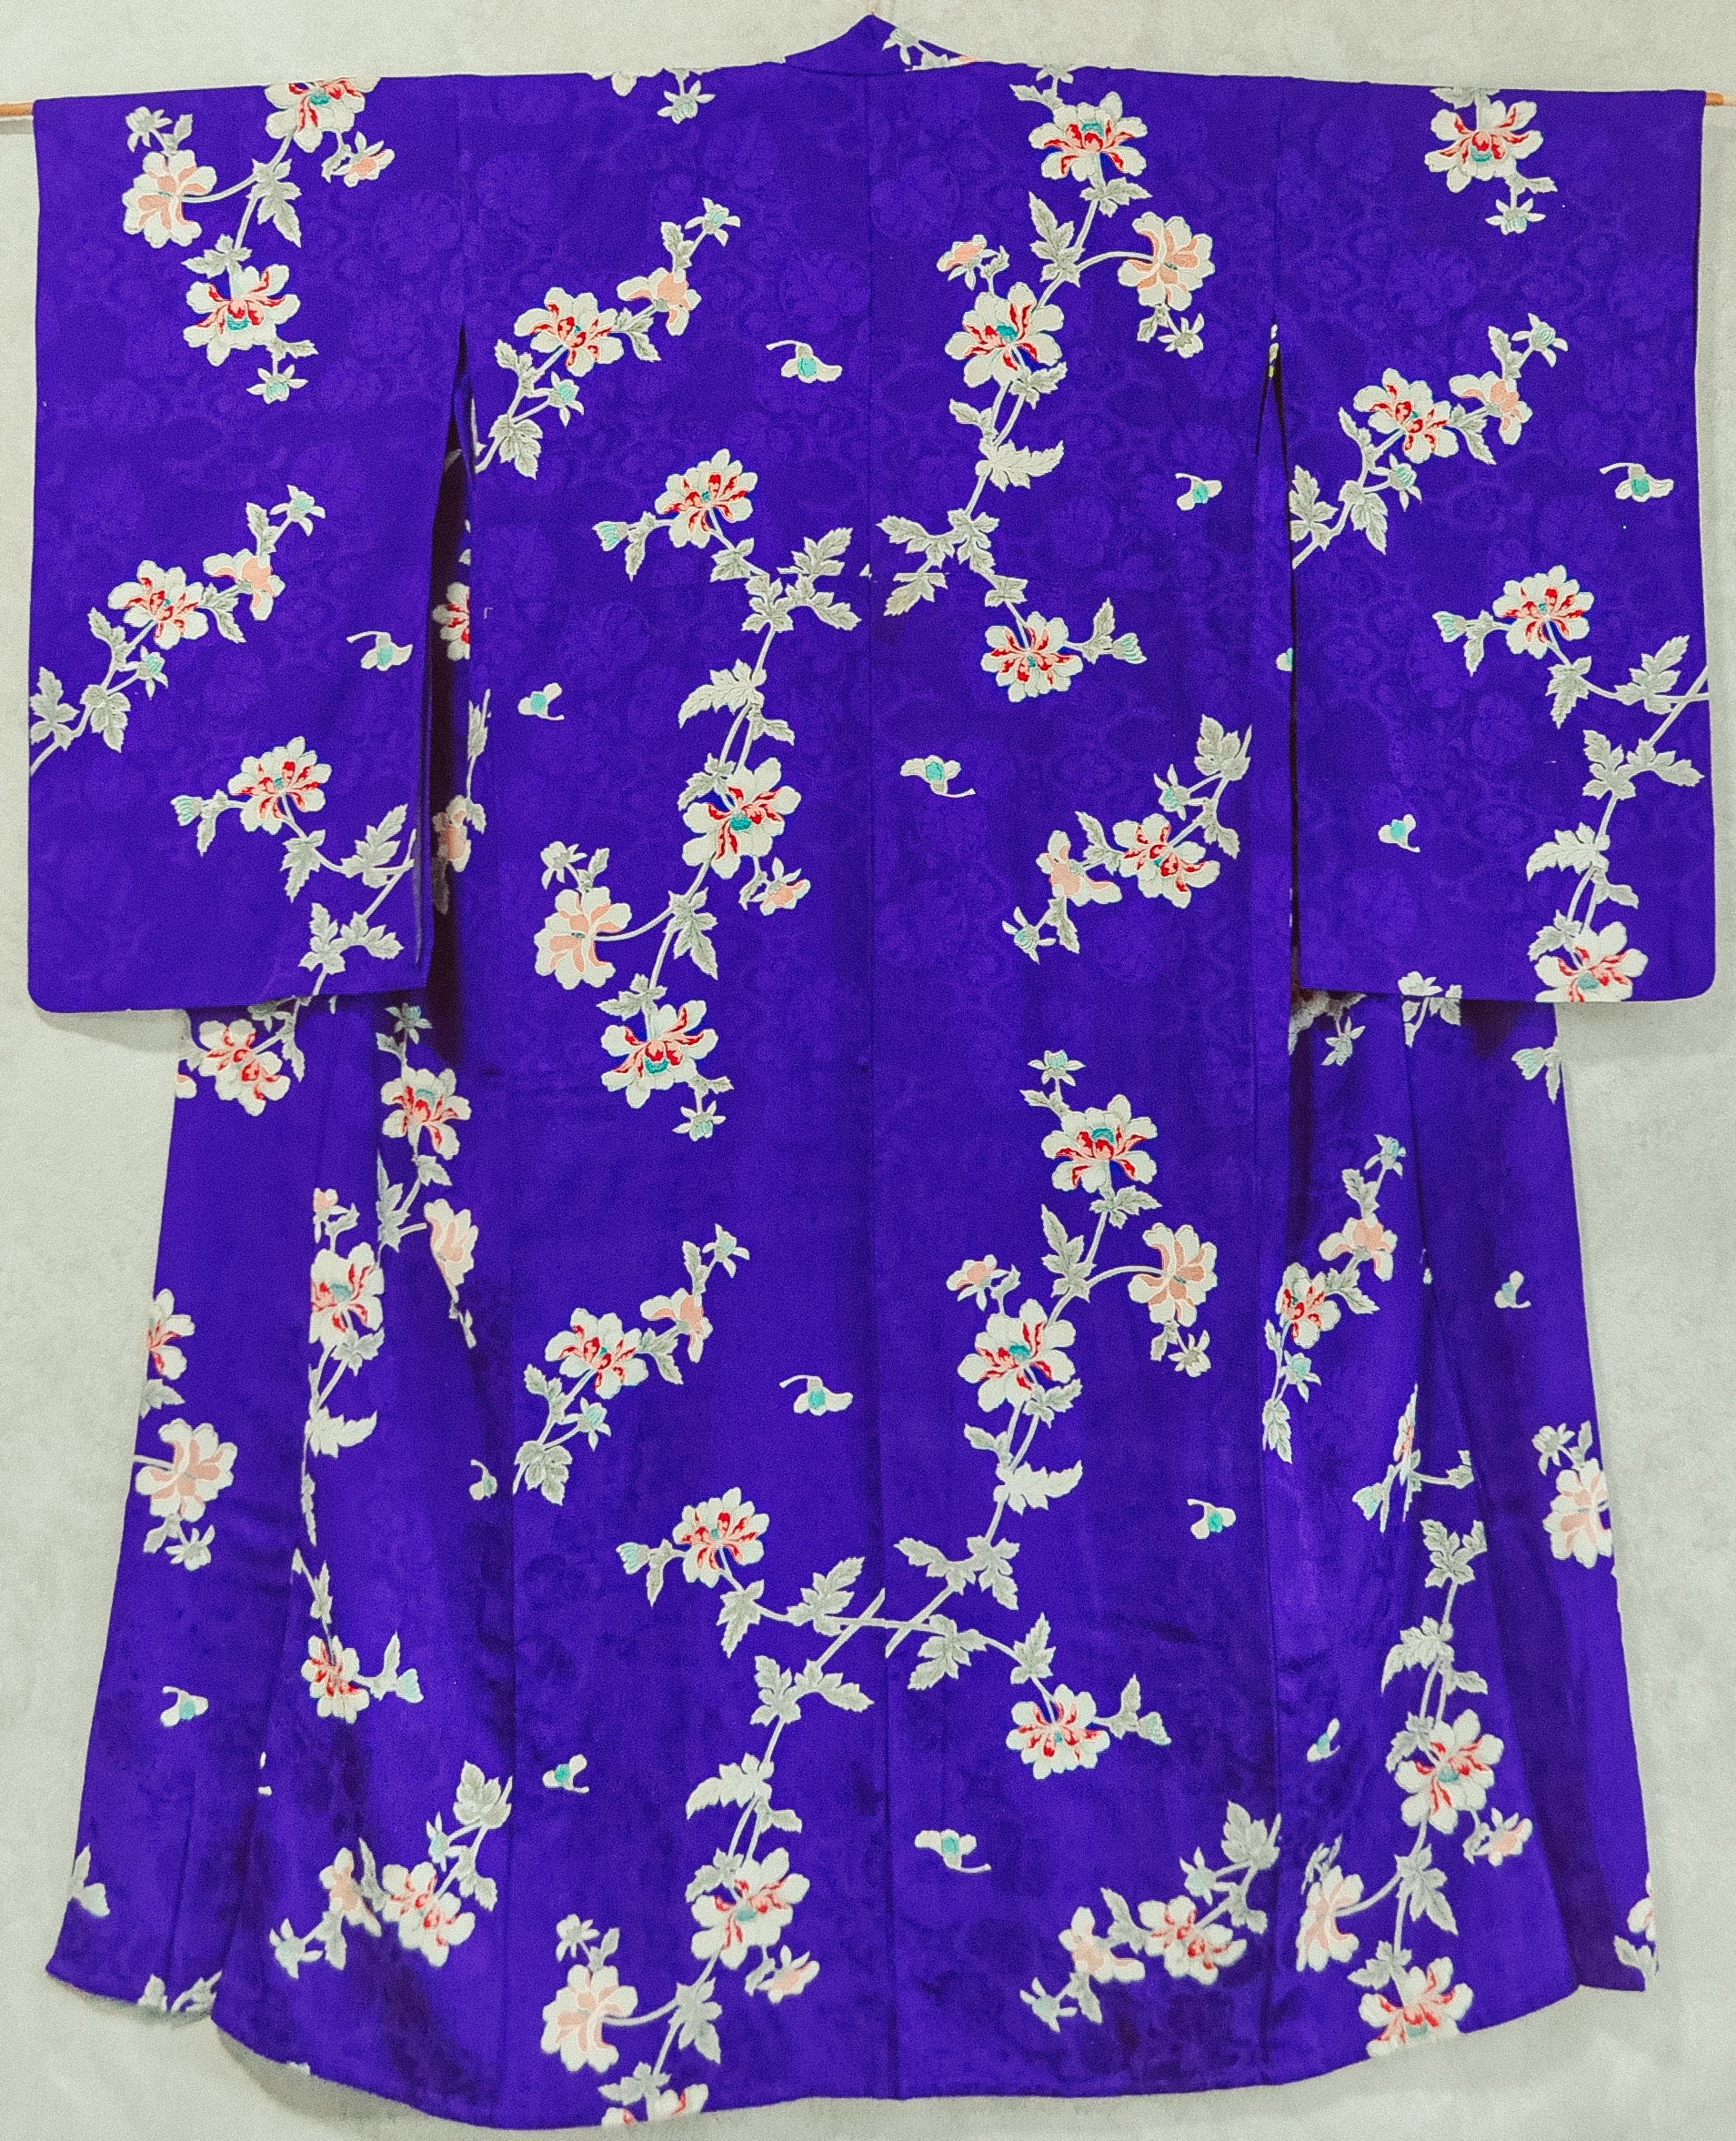 Shobu Iris Tree Peony Print Vintage Silk Tachibana pattern Jacquard Kimono